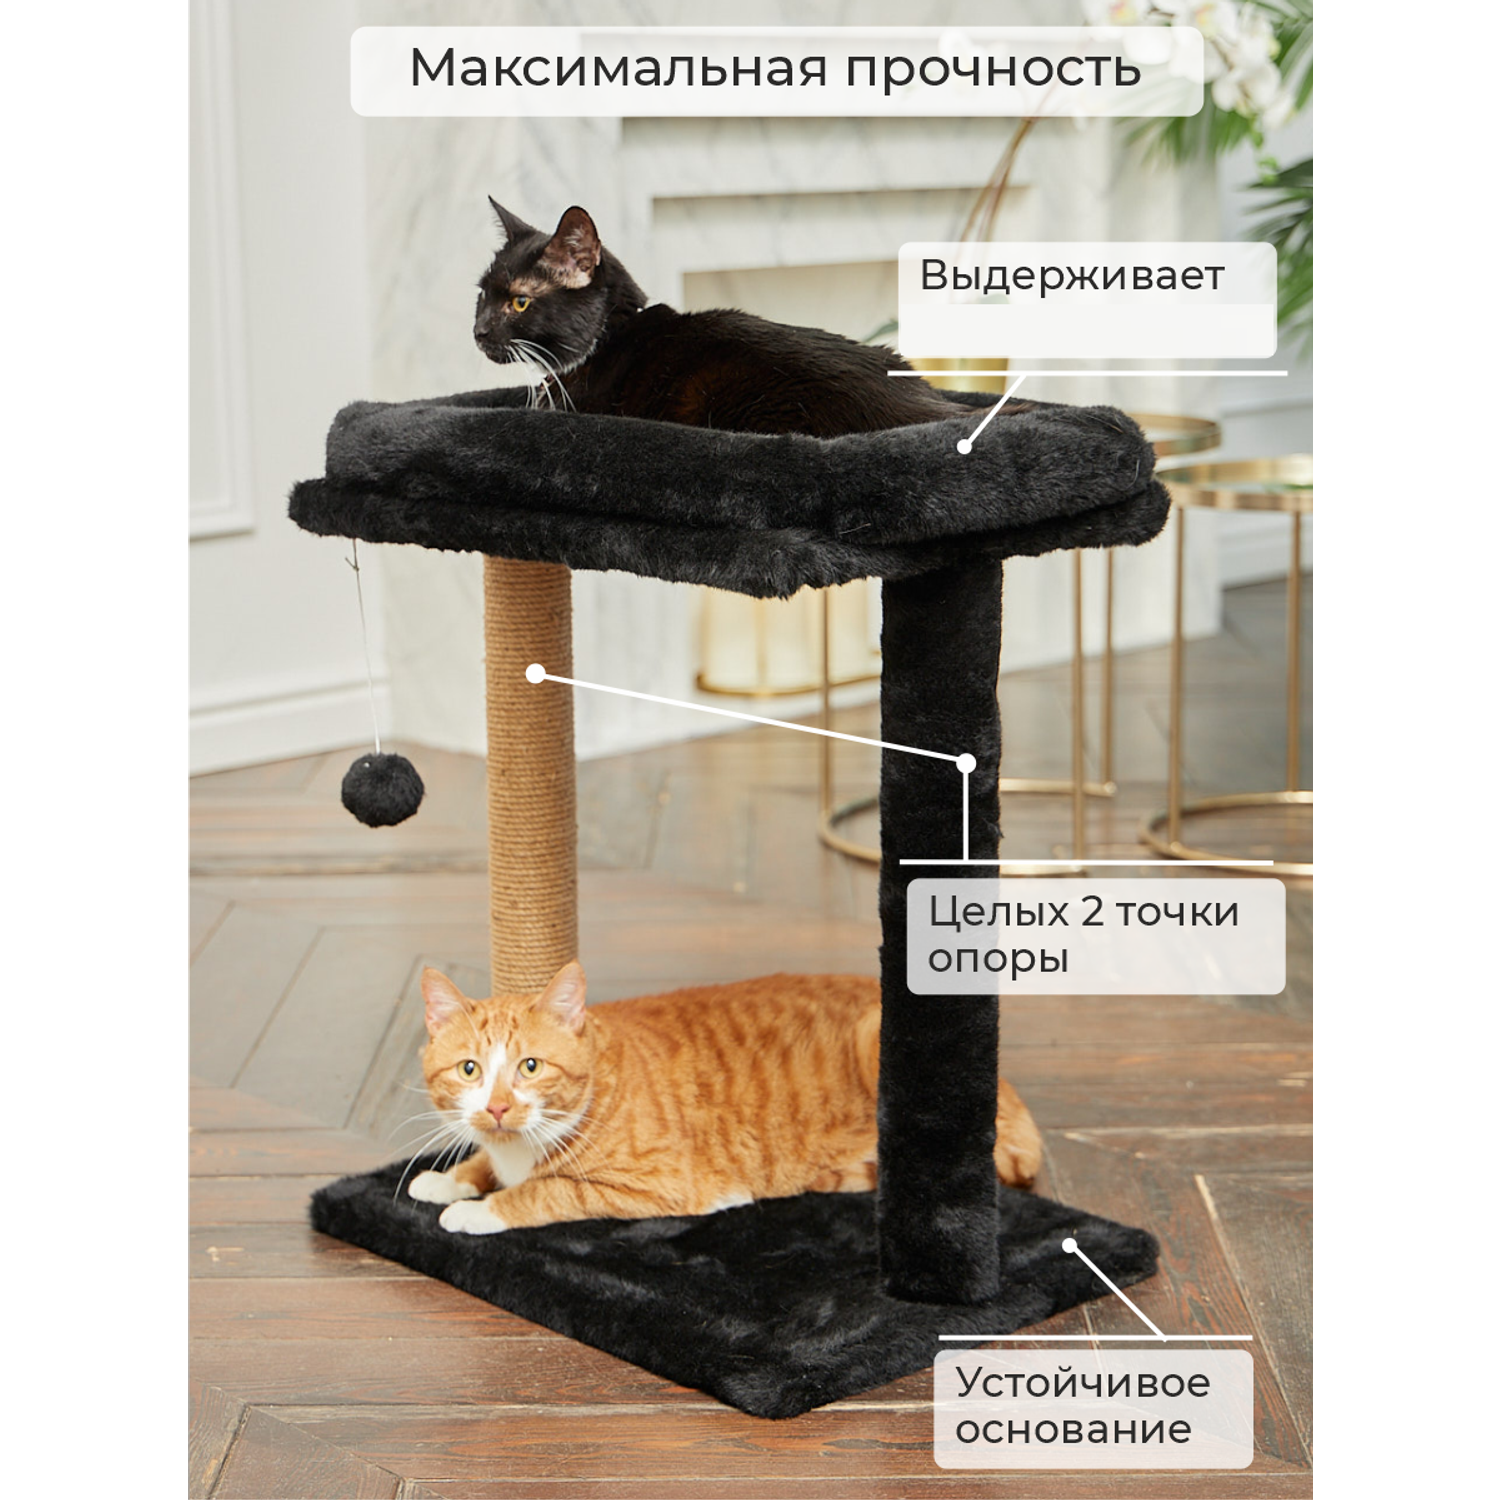 Стойка Когтеточка для Кошки – купить в интернет-магазине OZON по низкой цене